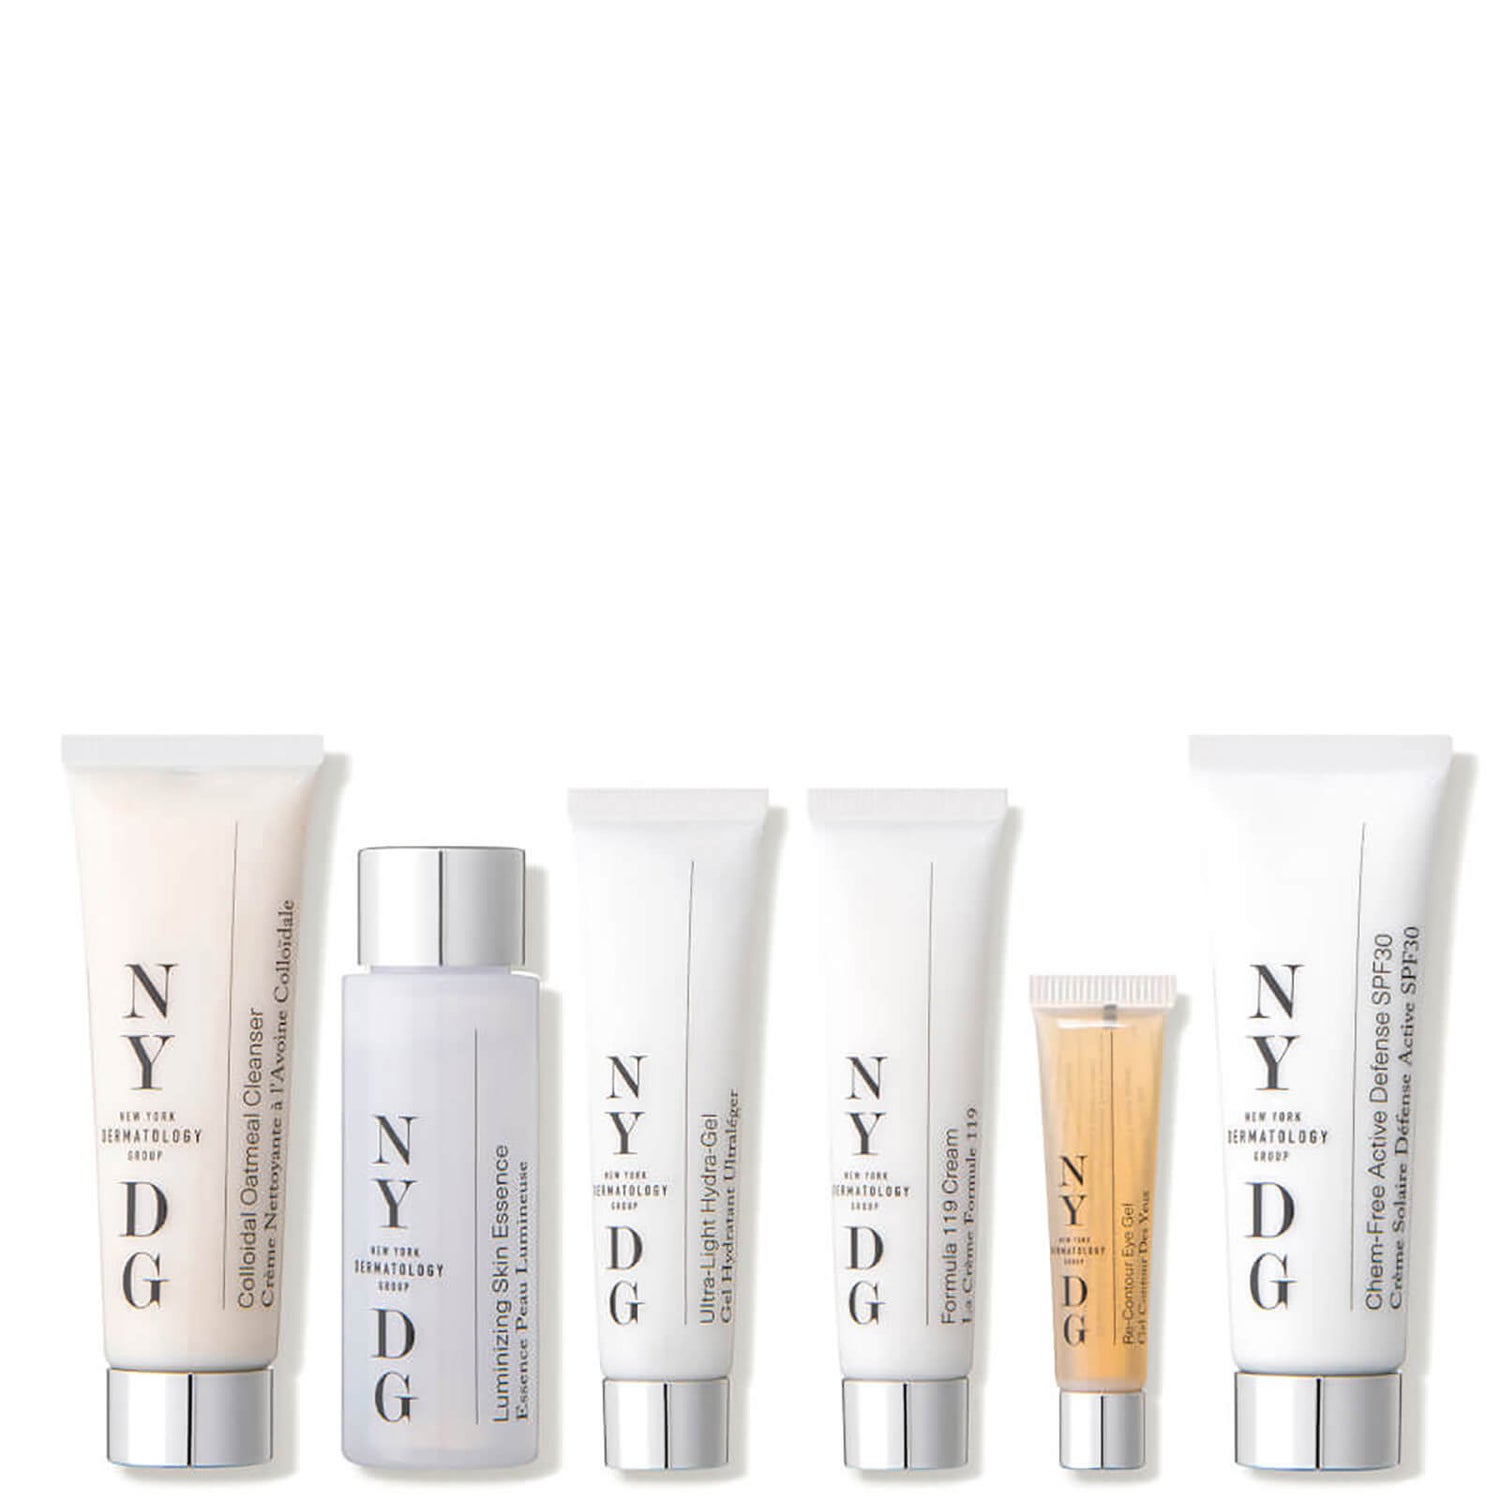 NYDG Skincare Travel Essentials Set (6 piece - $136 Value)